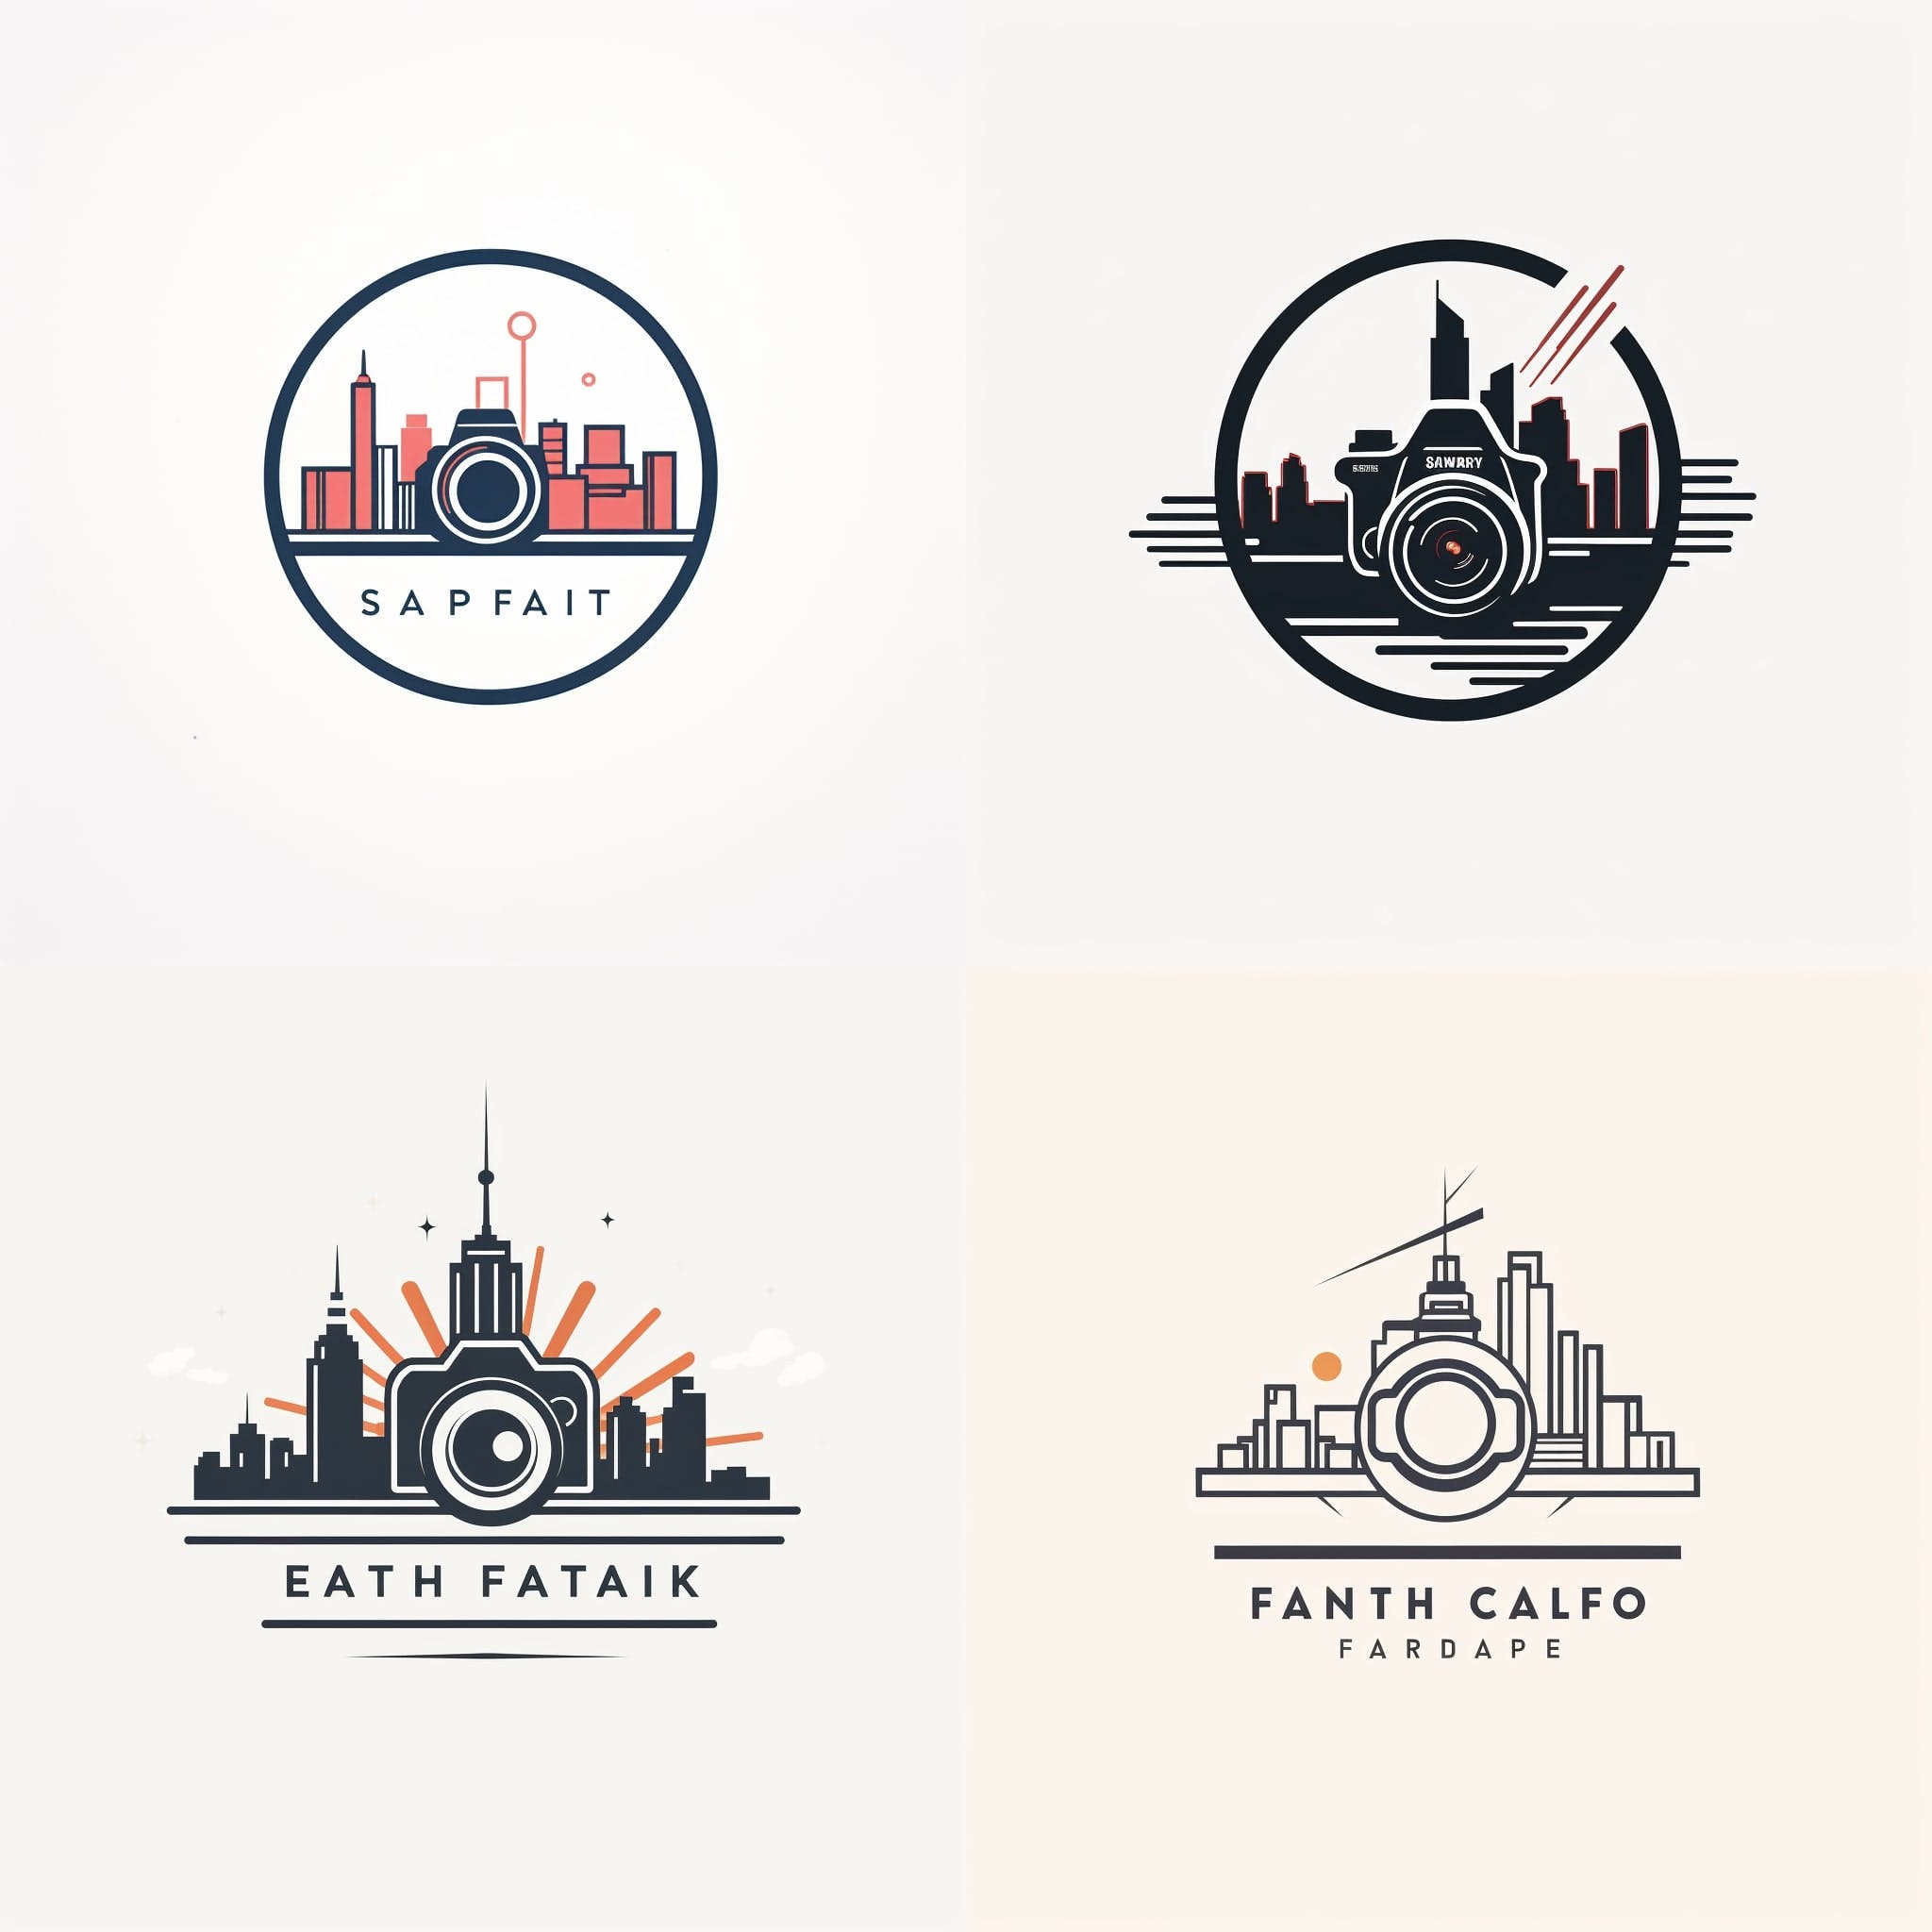 Best midjourney prompts for logo design